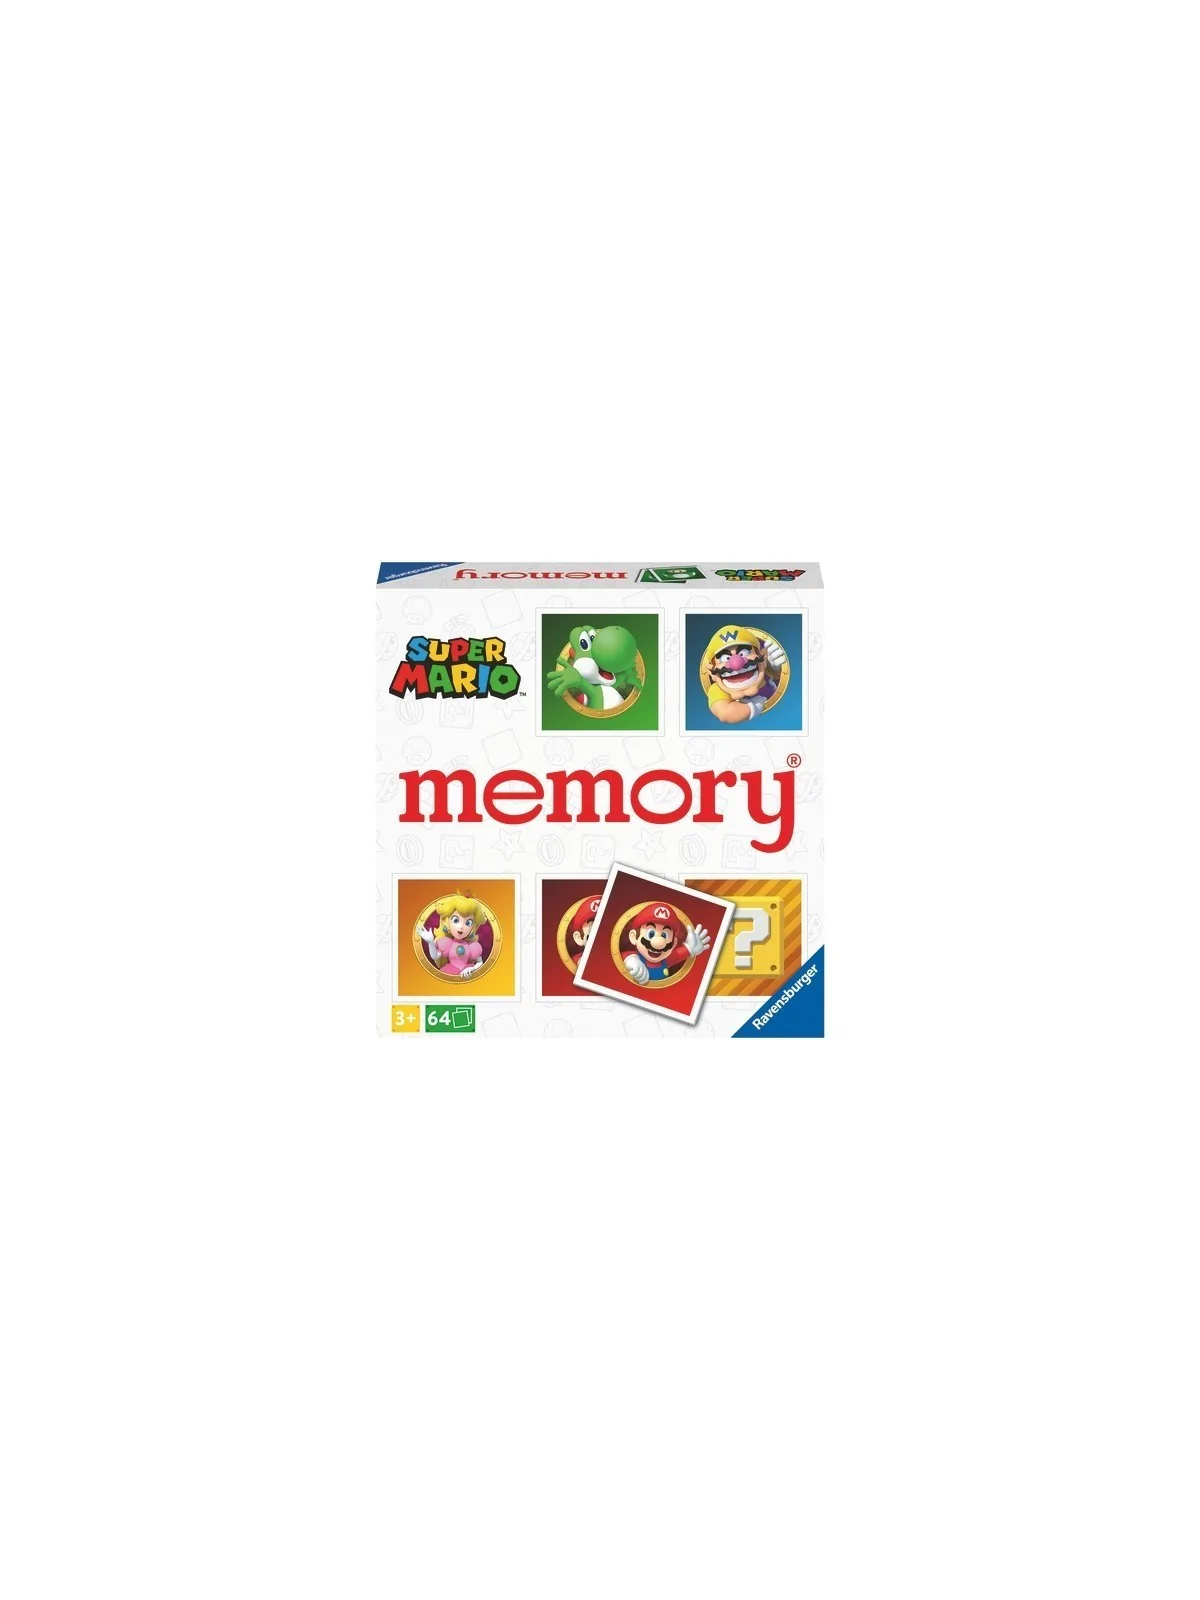 Comprar Memory® Super Mario barato al mejor precio 14,35 € de Ravensbu